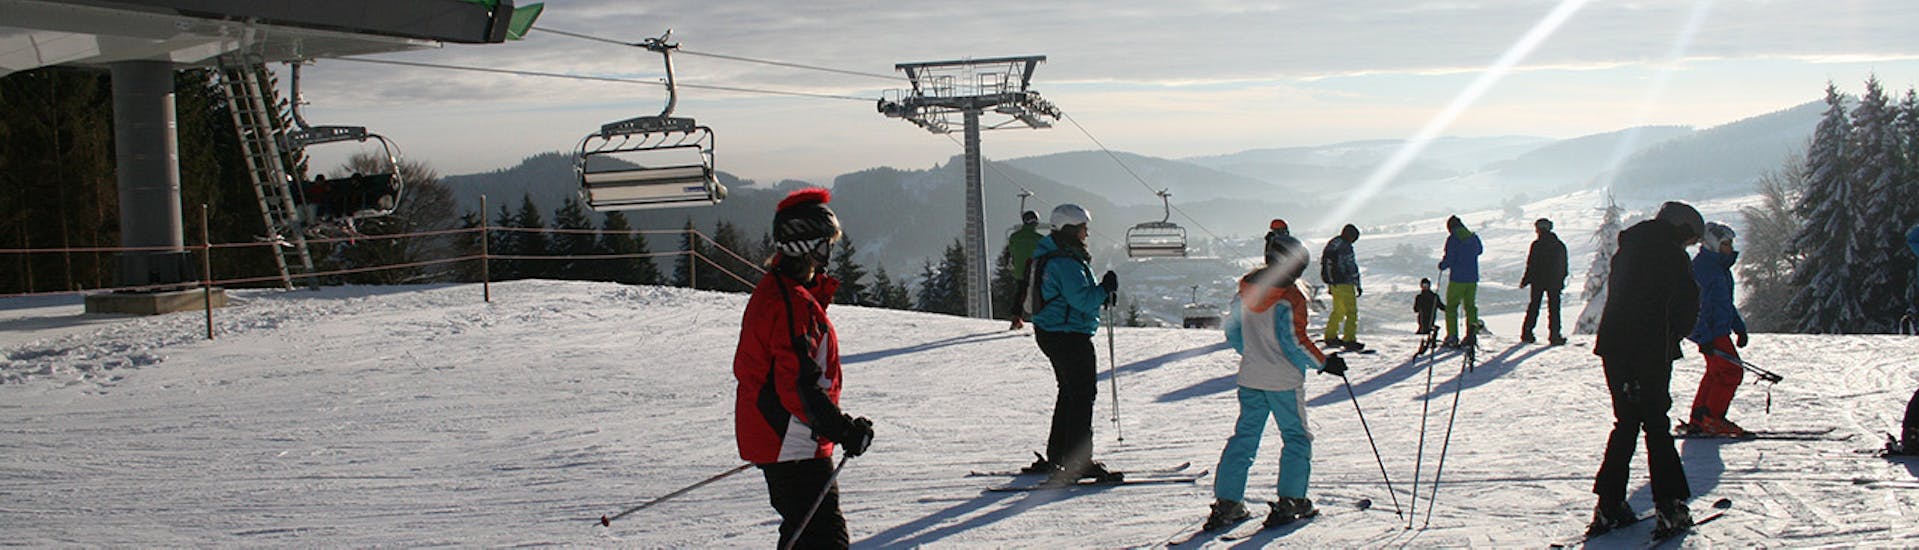 Volwassen skilessen voor ervaren skiërs (vanaf 17 jaar).